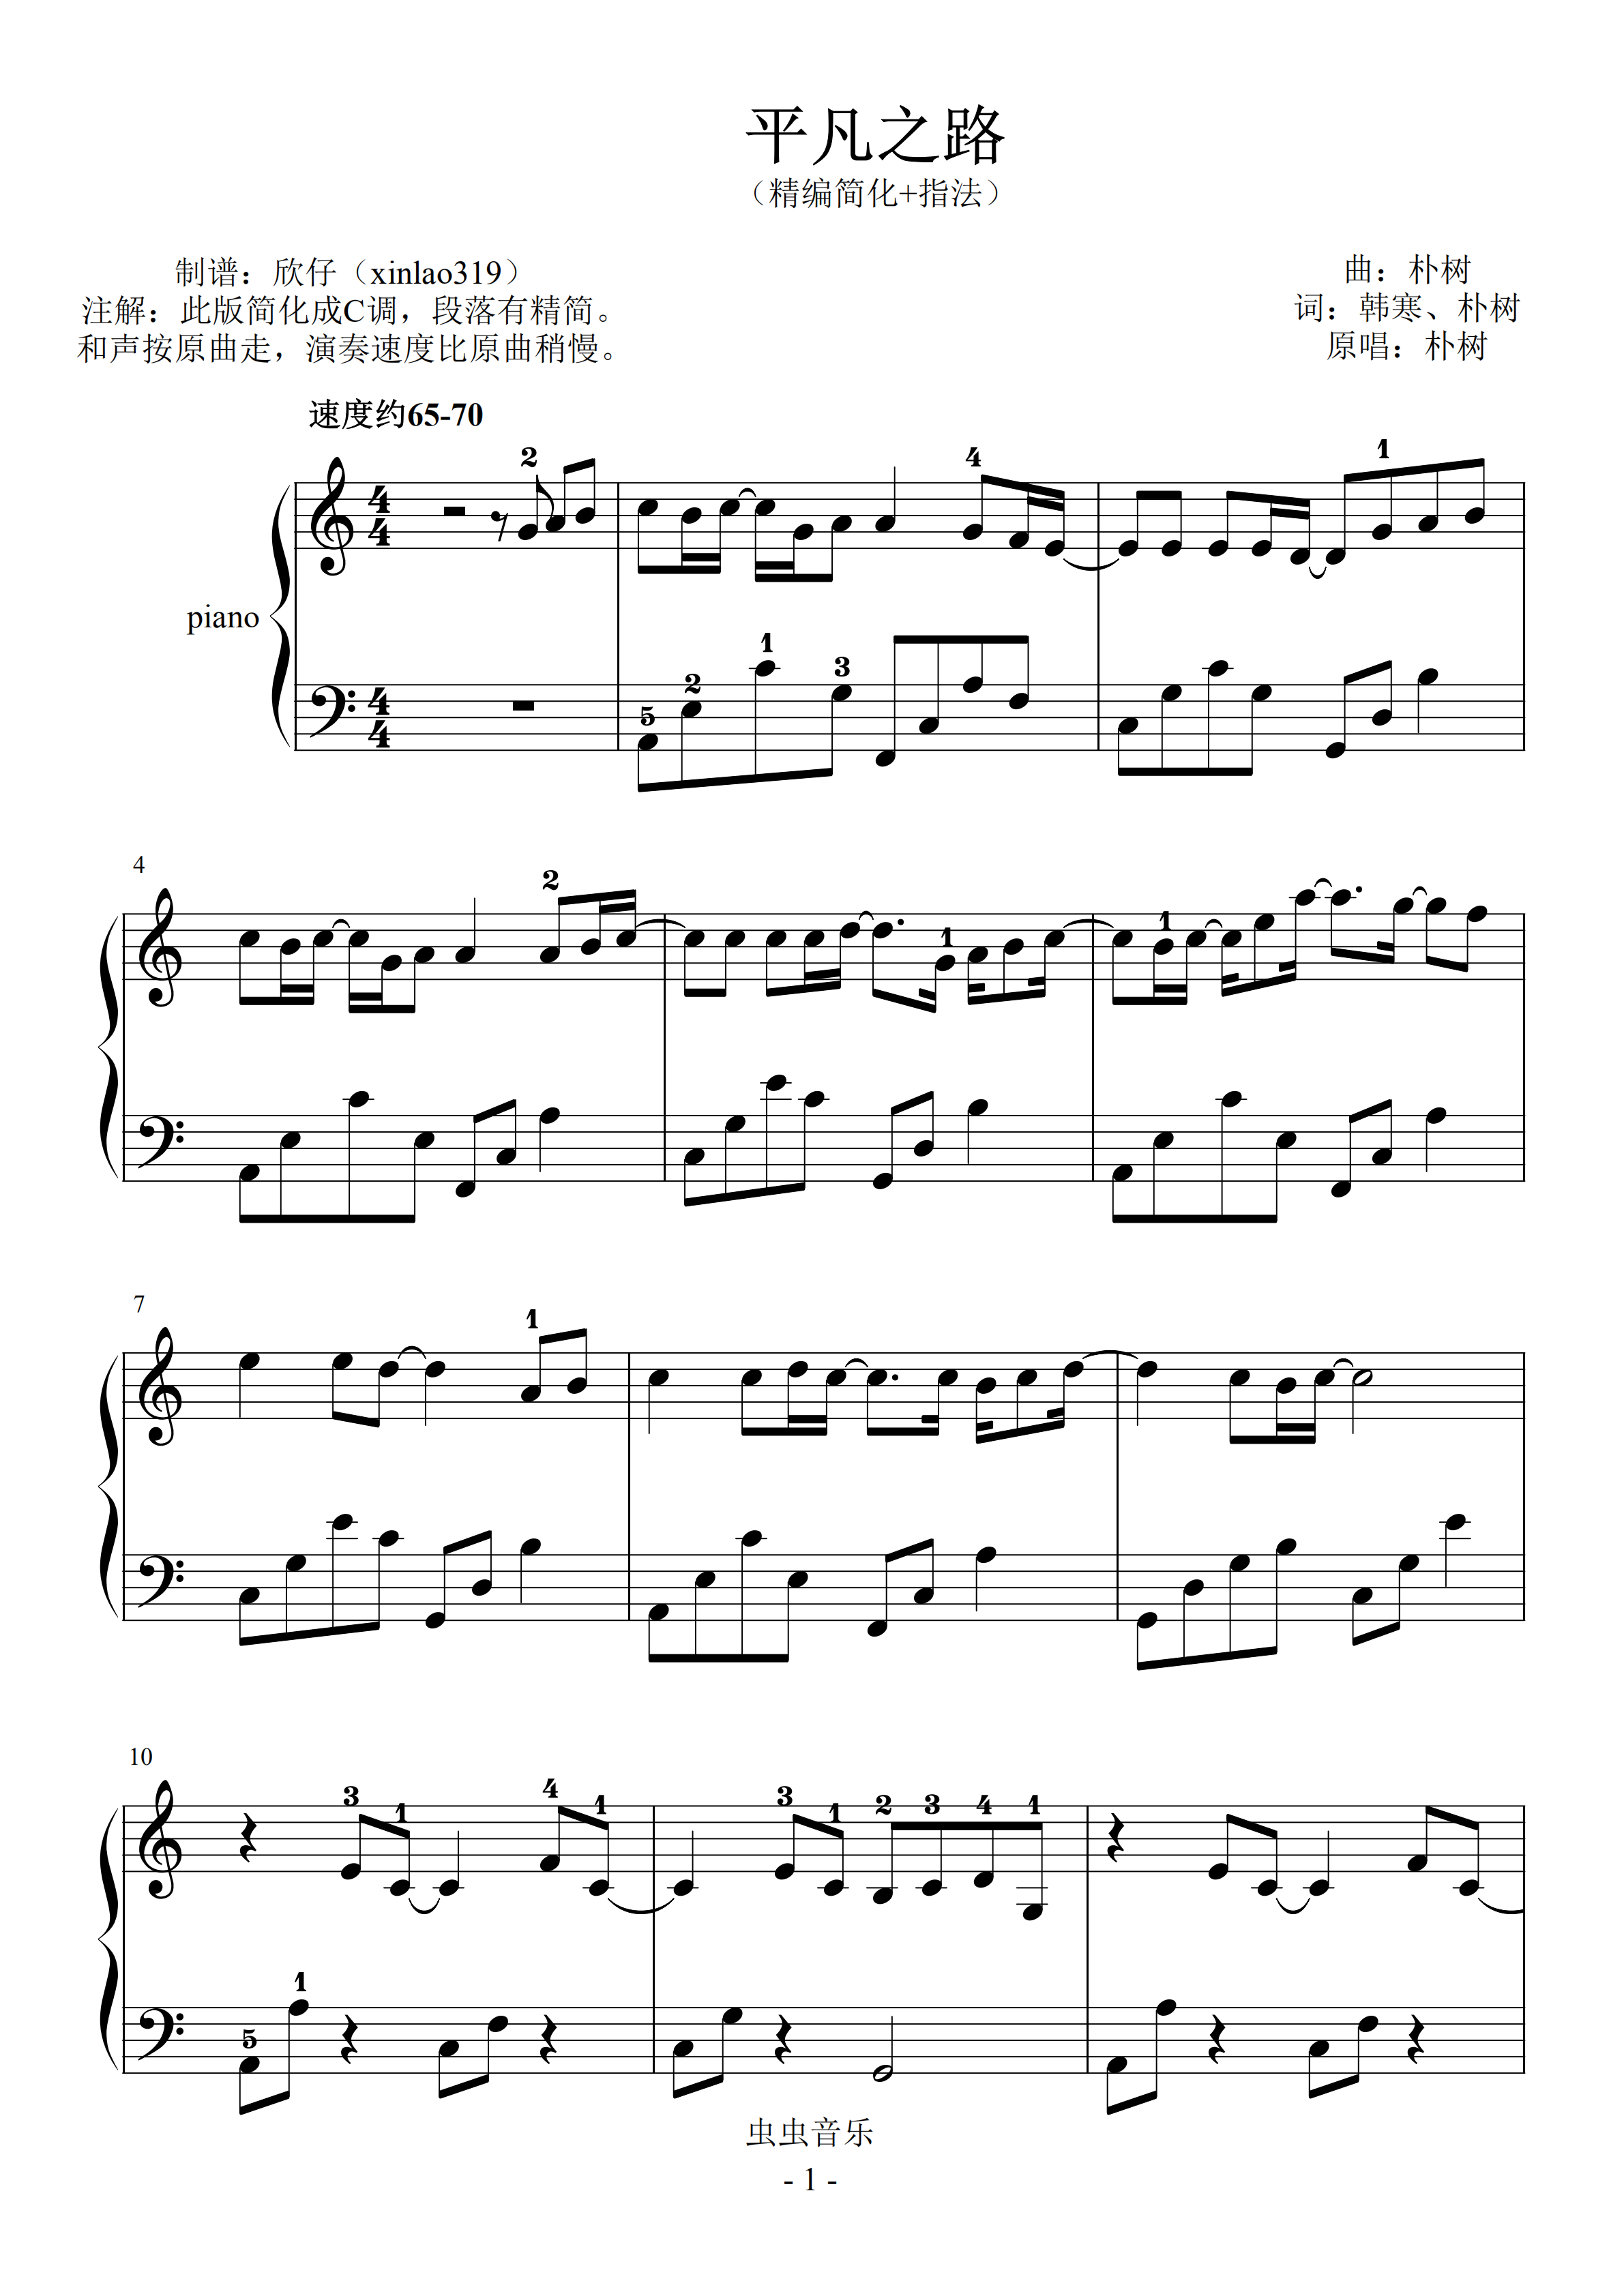 简化版《清白之年》钢琴谱 - 初学者最易上手 - 朴树带指法钢琴谱子 - 钢琴简谱